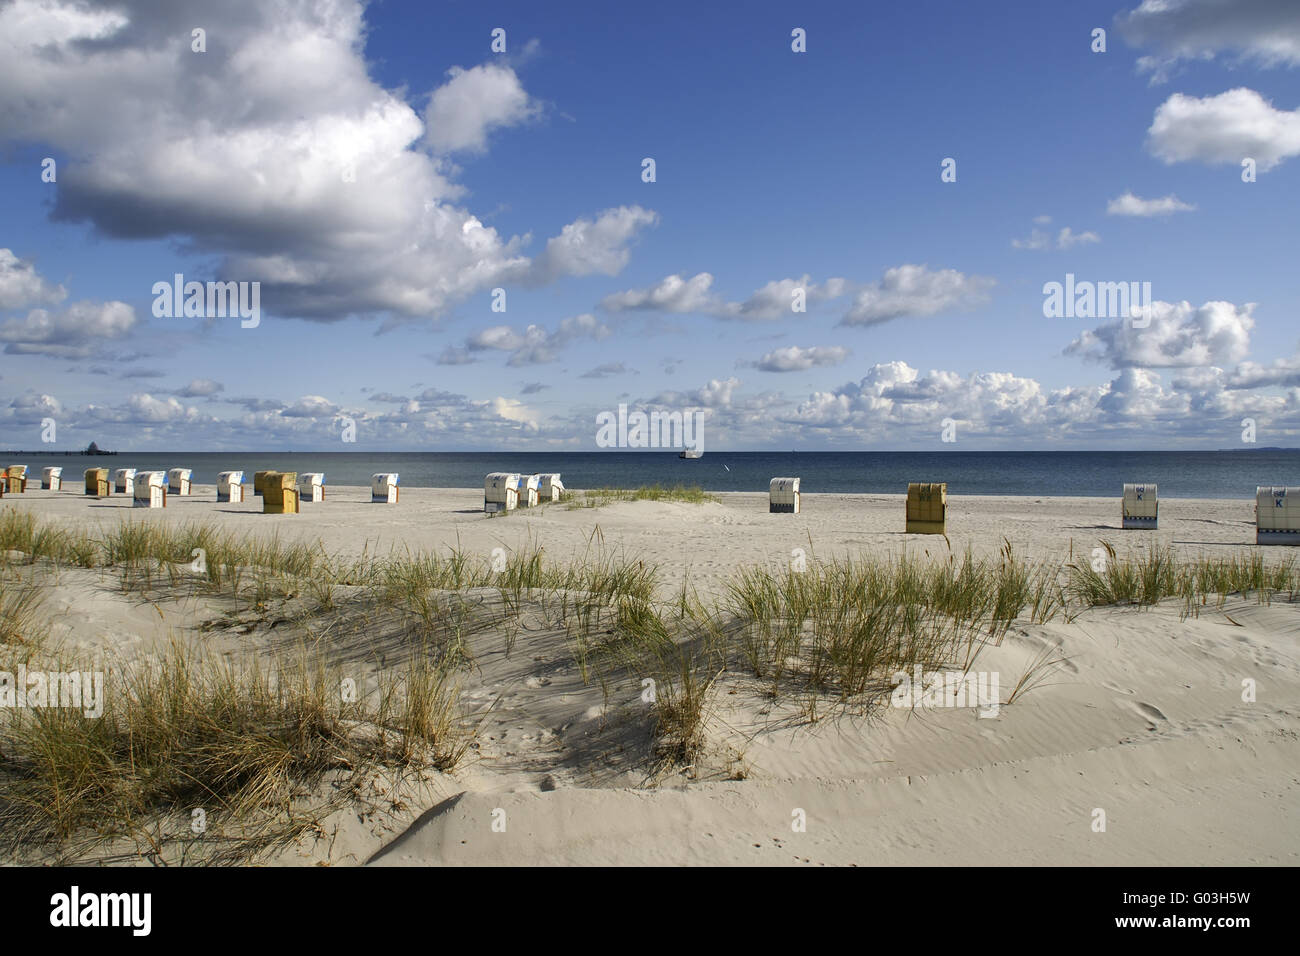 Am Strand von Grömitz, Ostsee, Deutschland Stockfoto